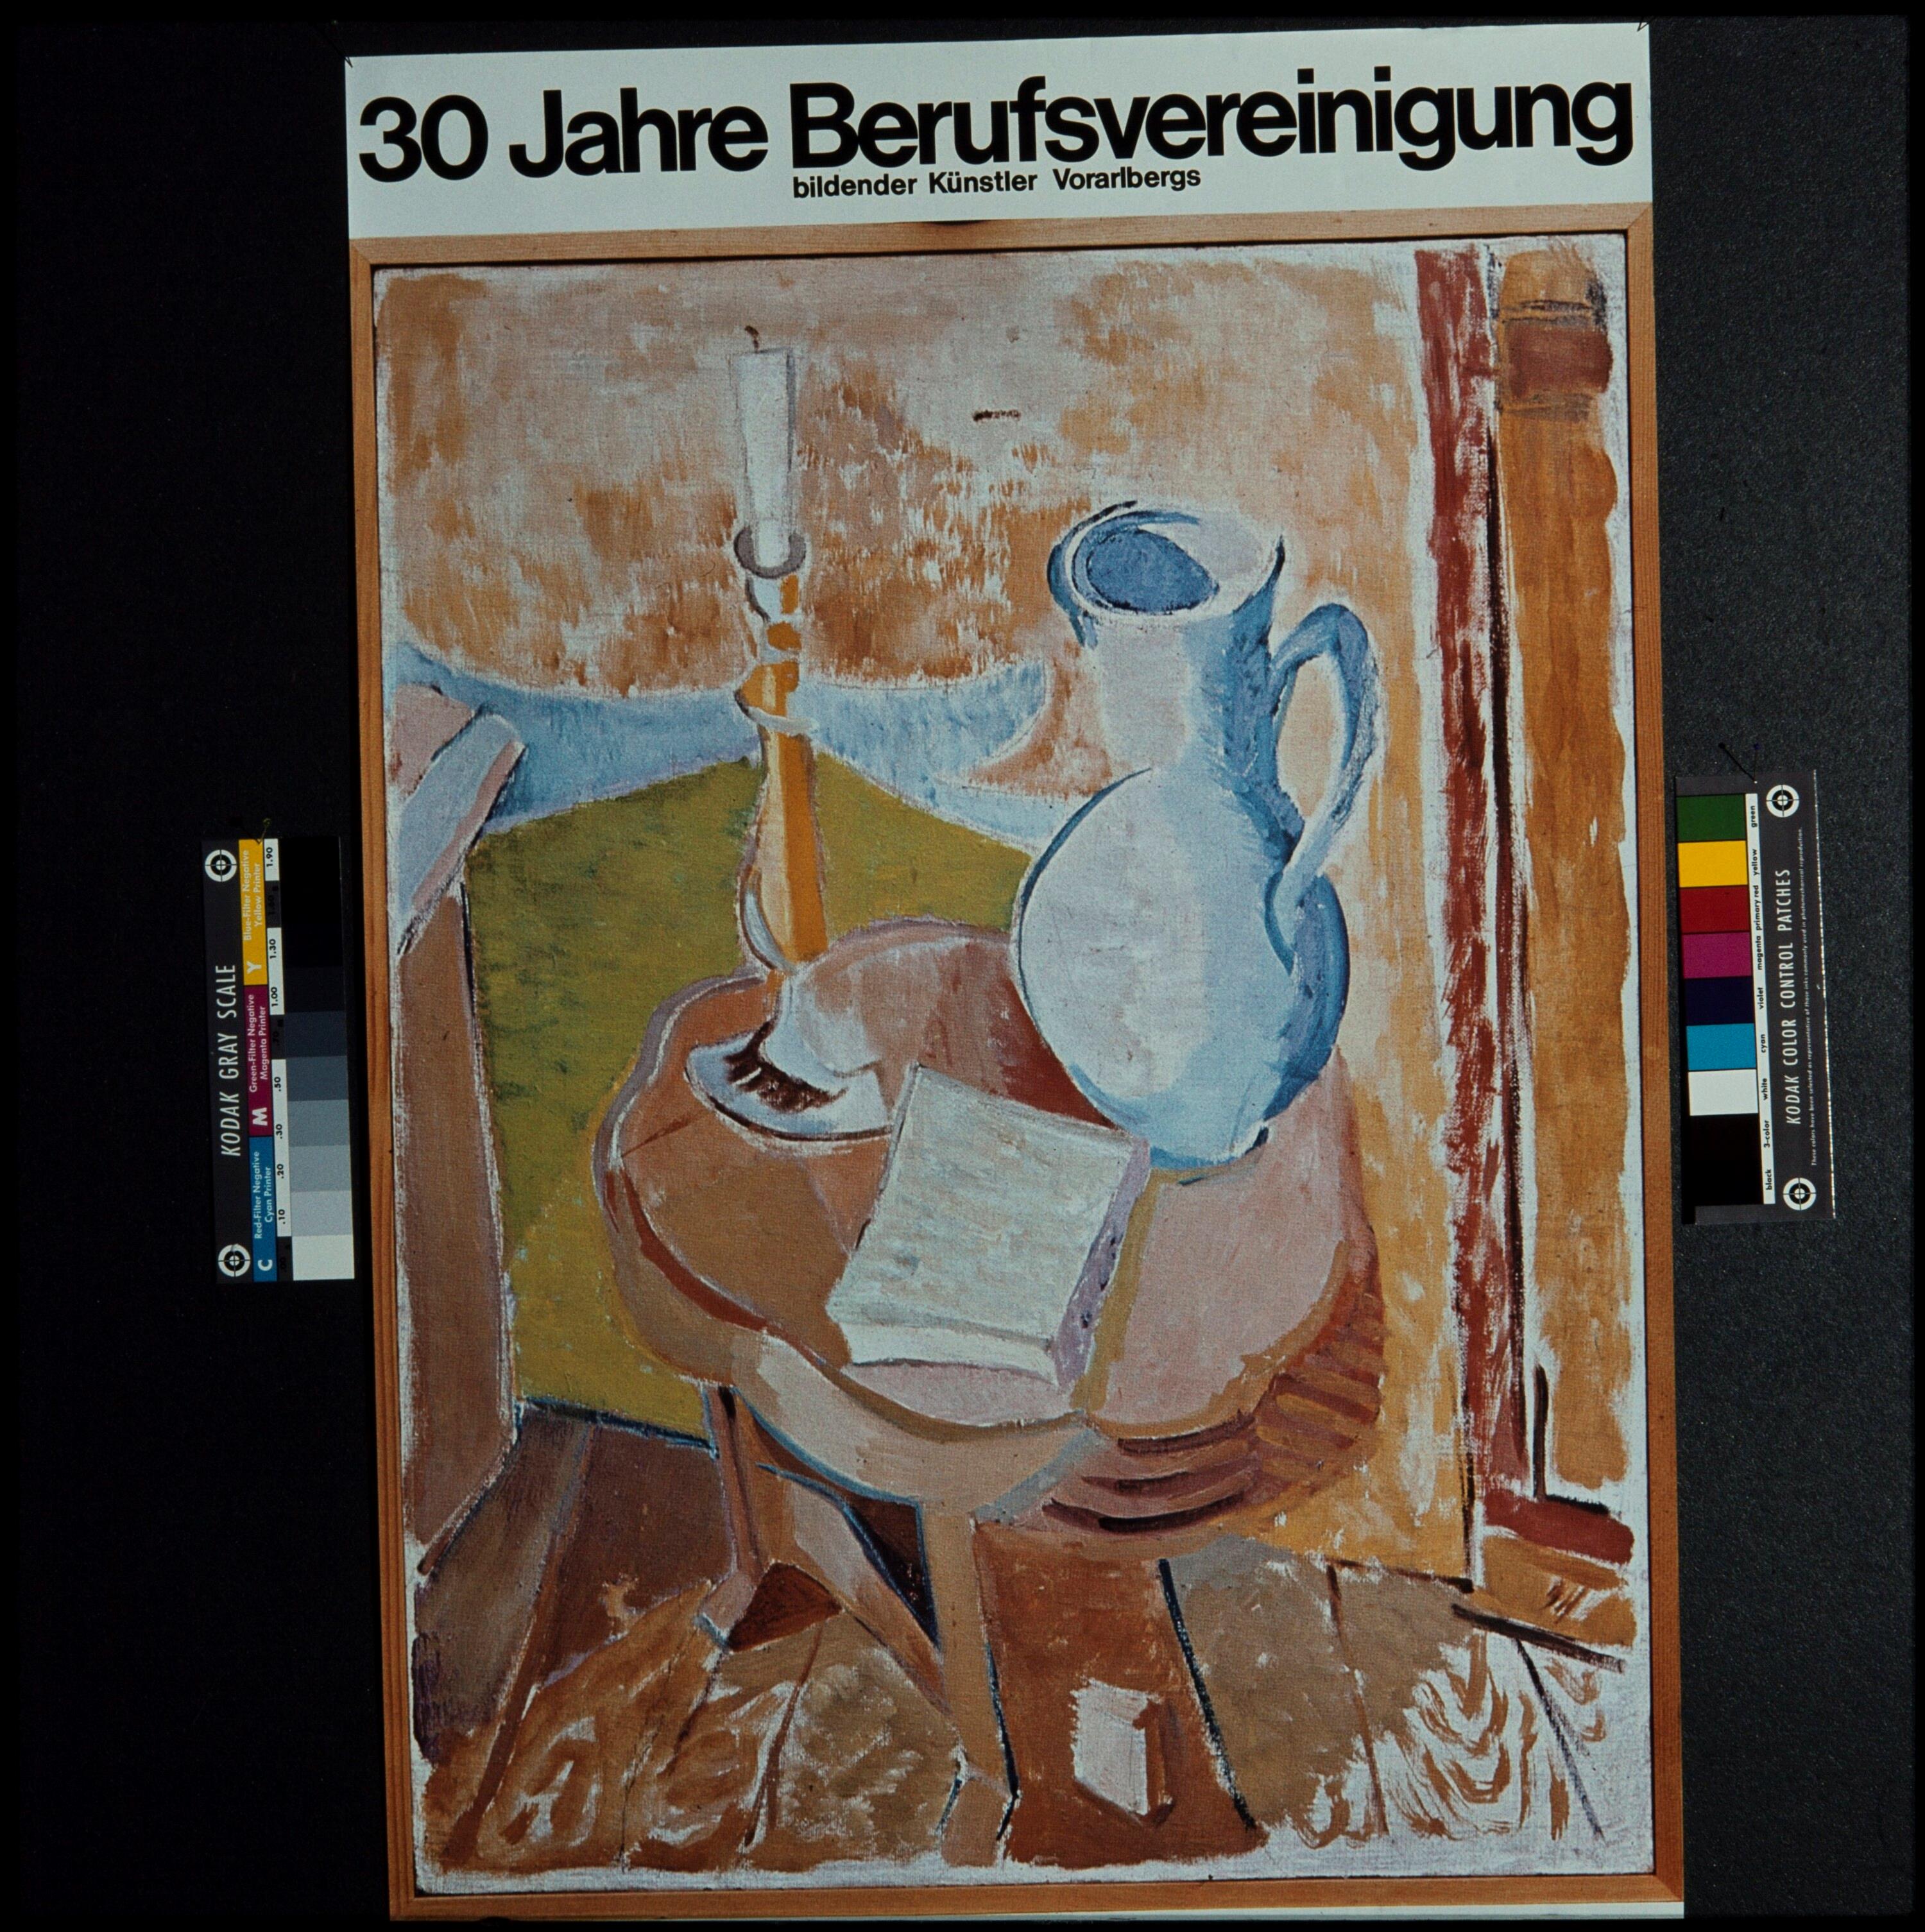 Berufsvereinigung bildender Künstler Vorarlbergs- Plakat></div>


    <hr>
    <div class=